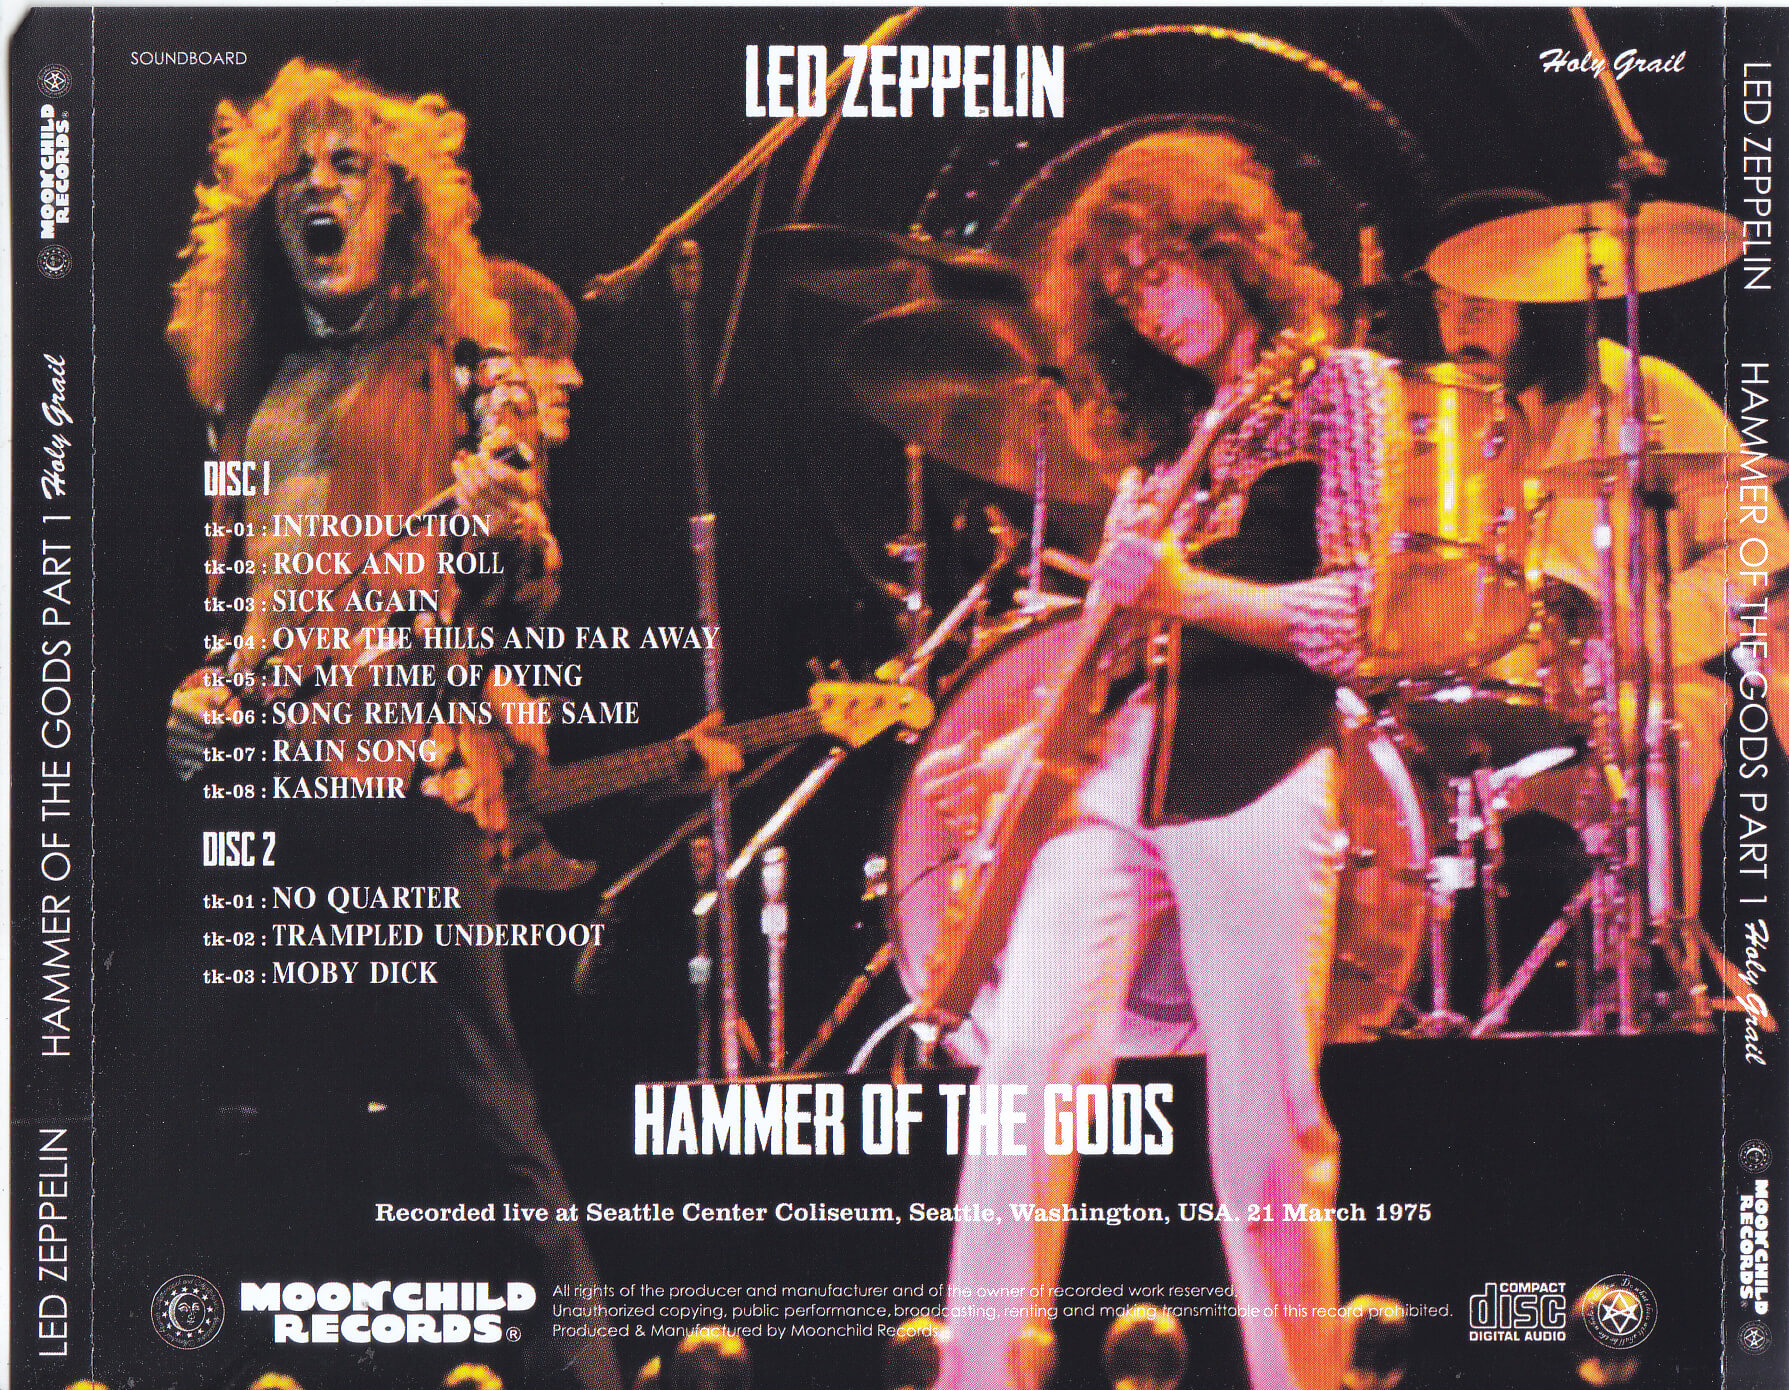 Led Zeppelin / Hammer Of The Gods Part 1 / 2CD – GiGinJapan